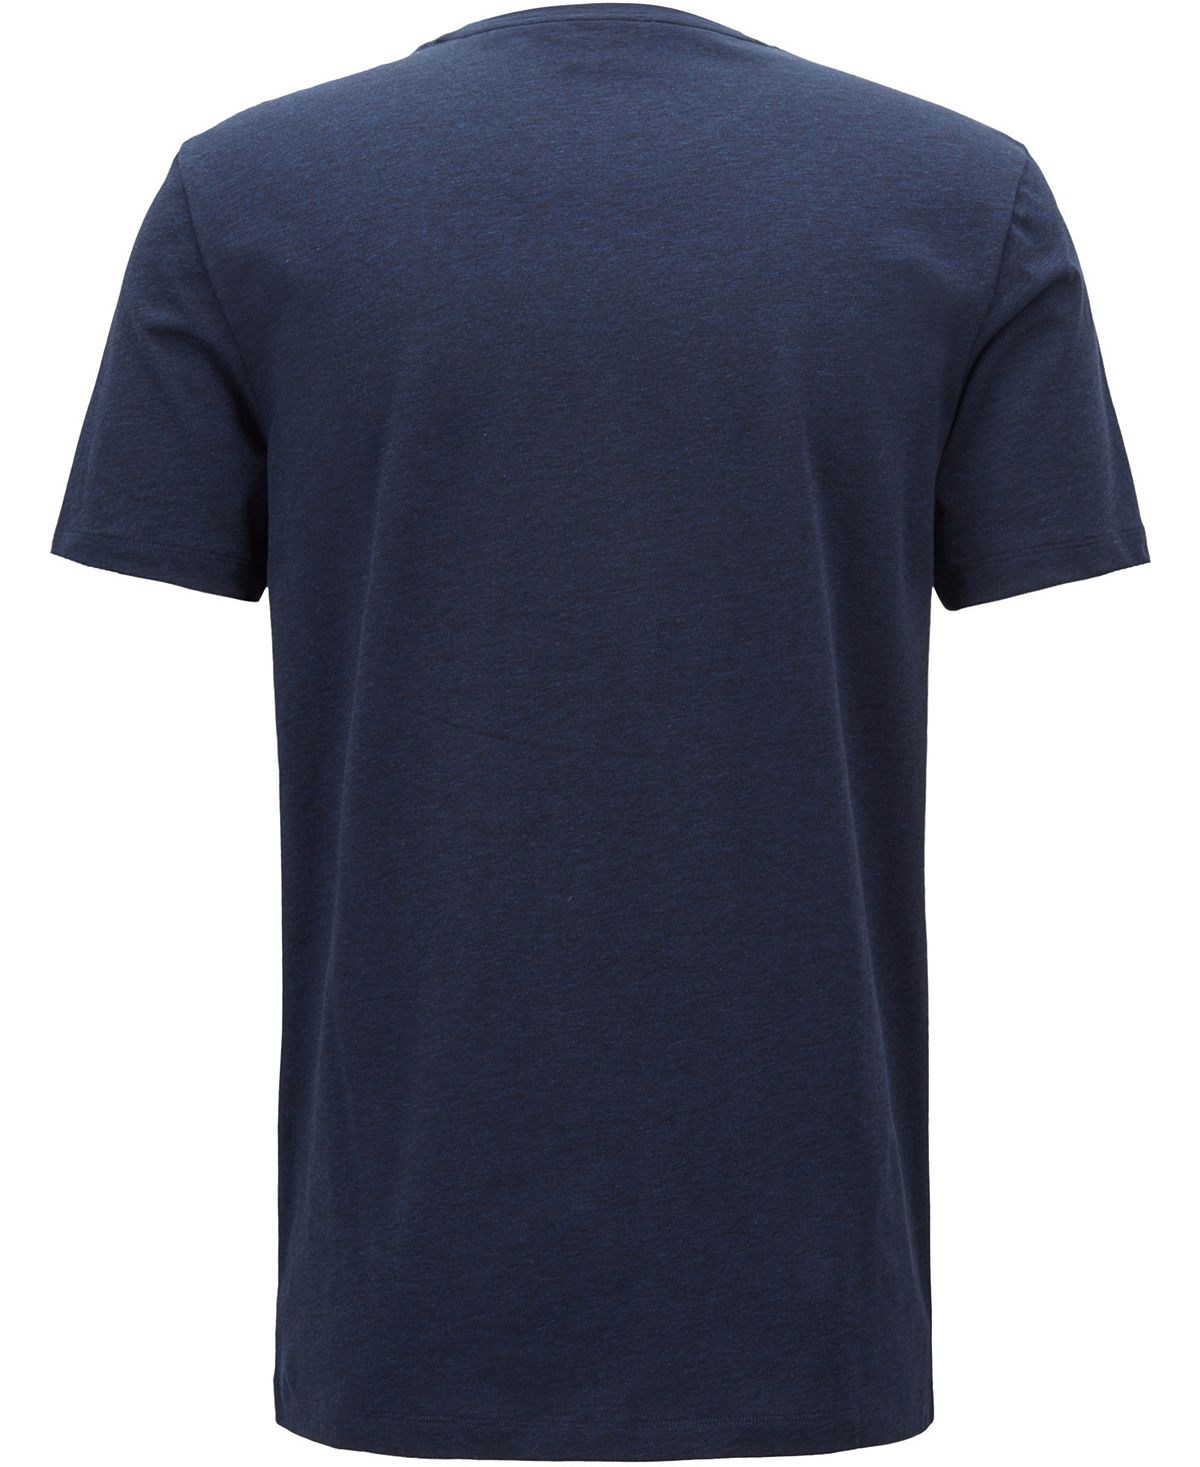 Hugo Boss Boss Slim-fit Graphic Cotton T-shirt Dark Navy